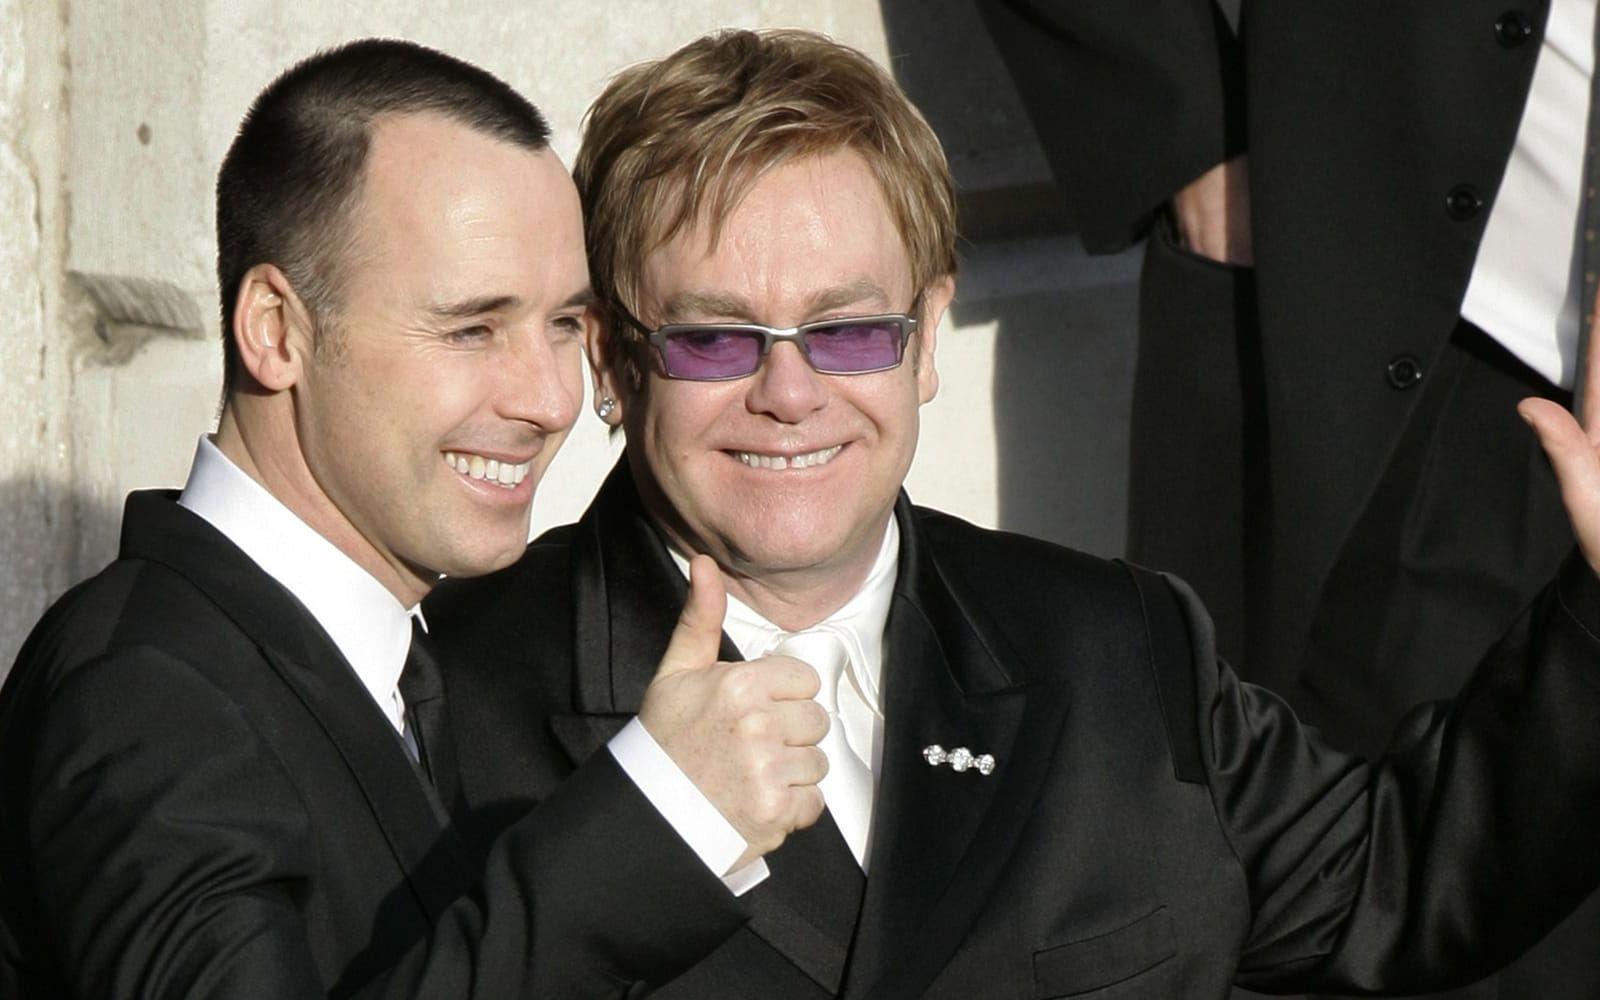 2005: Elton John med sin partner David Furnish, sedan de blivit bland de första gayparen i Storbritannien att ingå partnerskap med varandra. De blev ett par 1993 och gifte sig 2014 när det blev lagligt för personer av samma kön att gifta sig med varandra i Storbritannien. Foto: TT